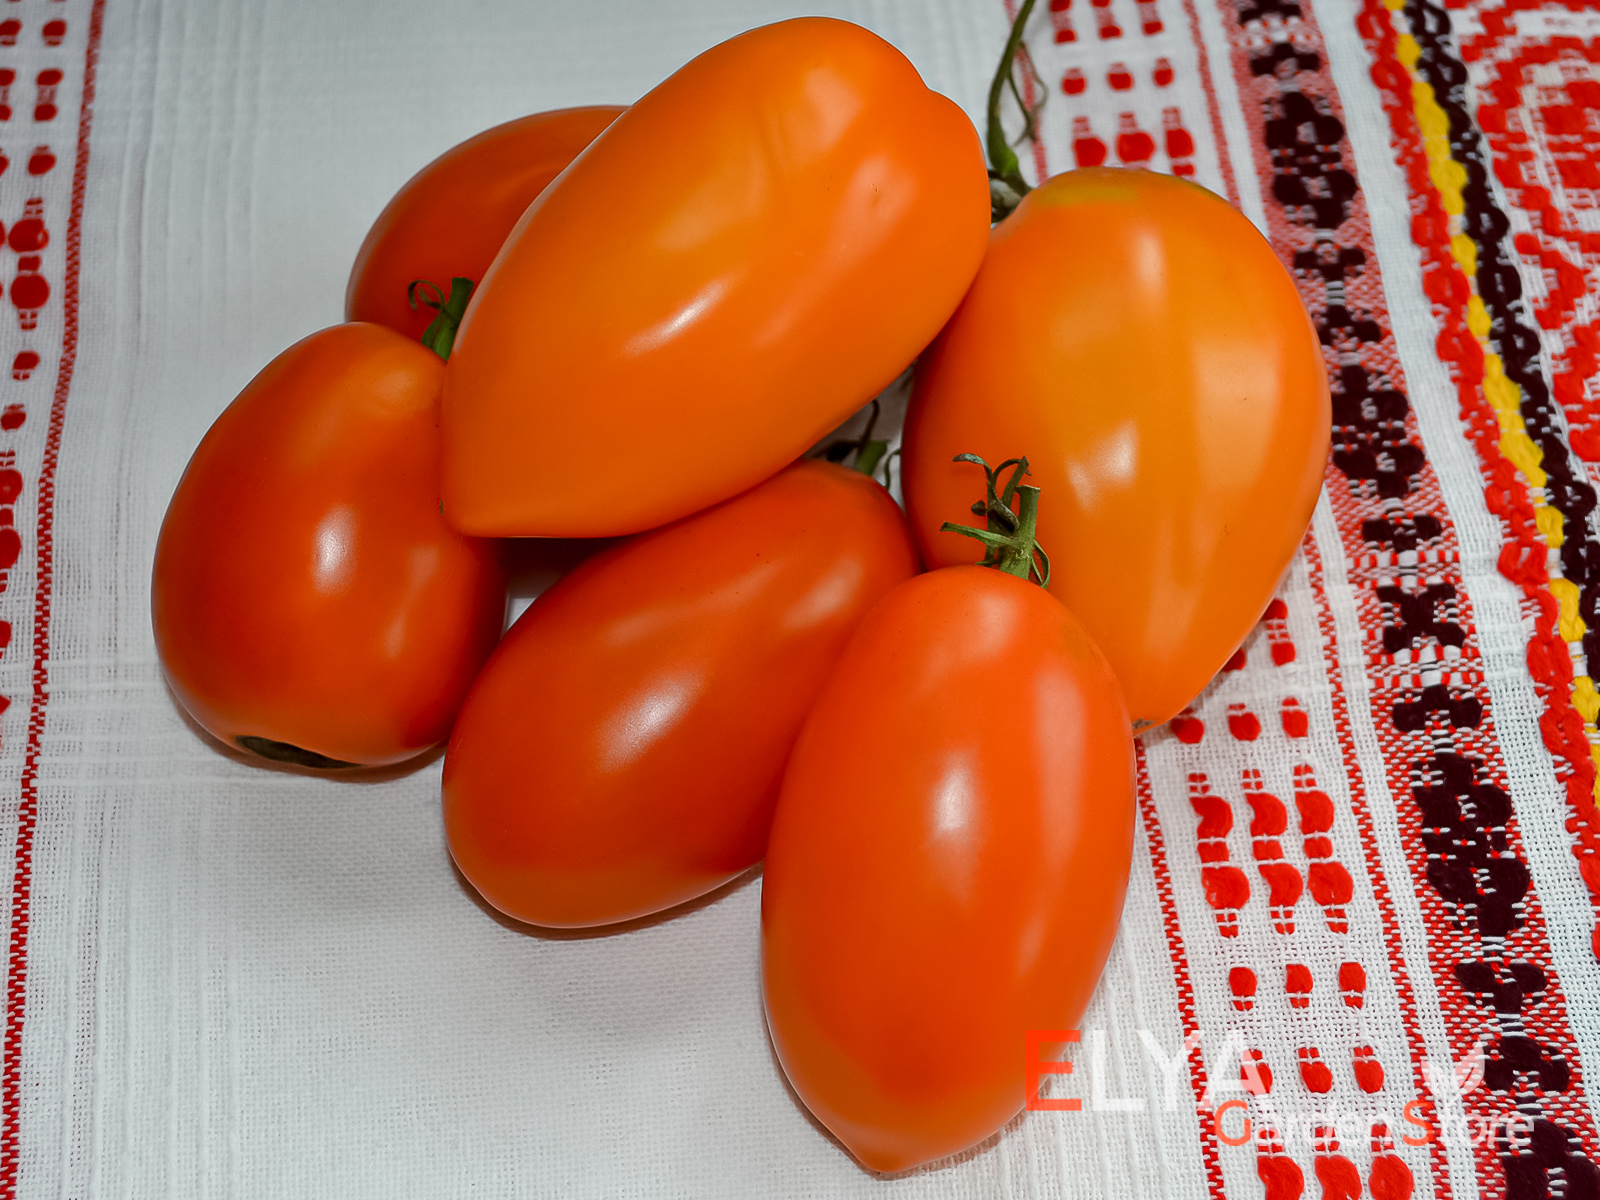 Коллекционный сорт томата Персик из Риги - отличный вкус, яркий и урожайный - фото магазина семня Elya Garden 